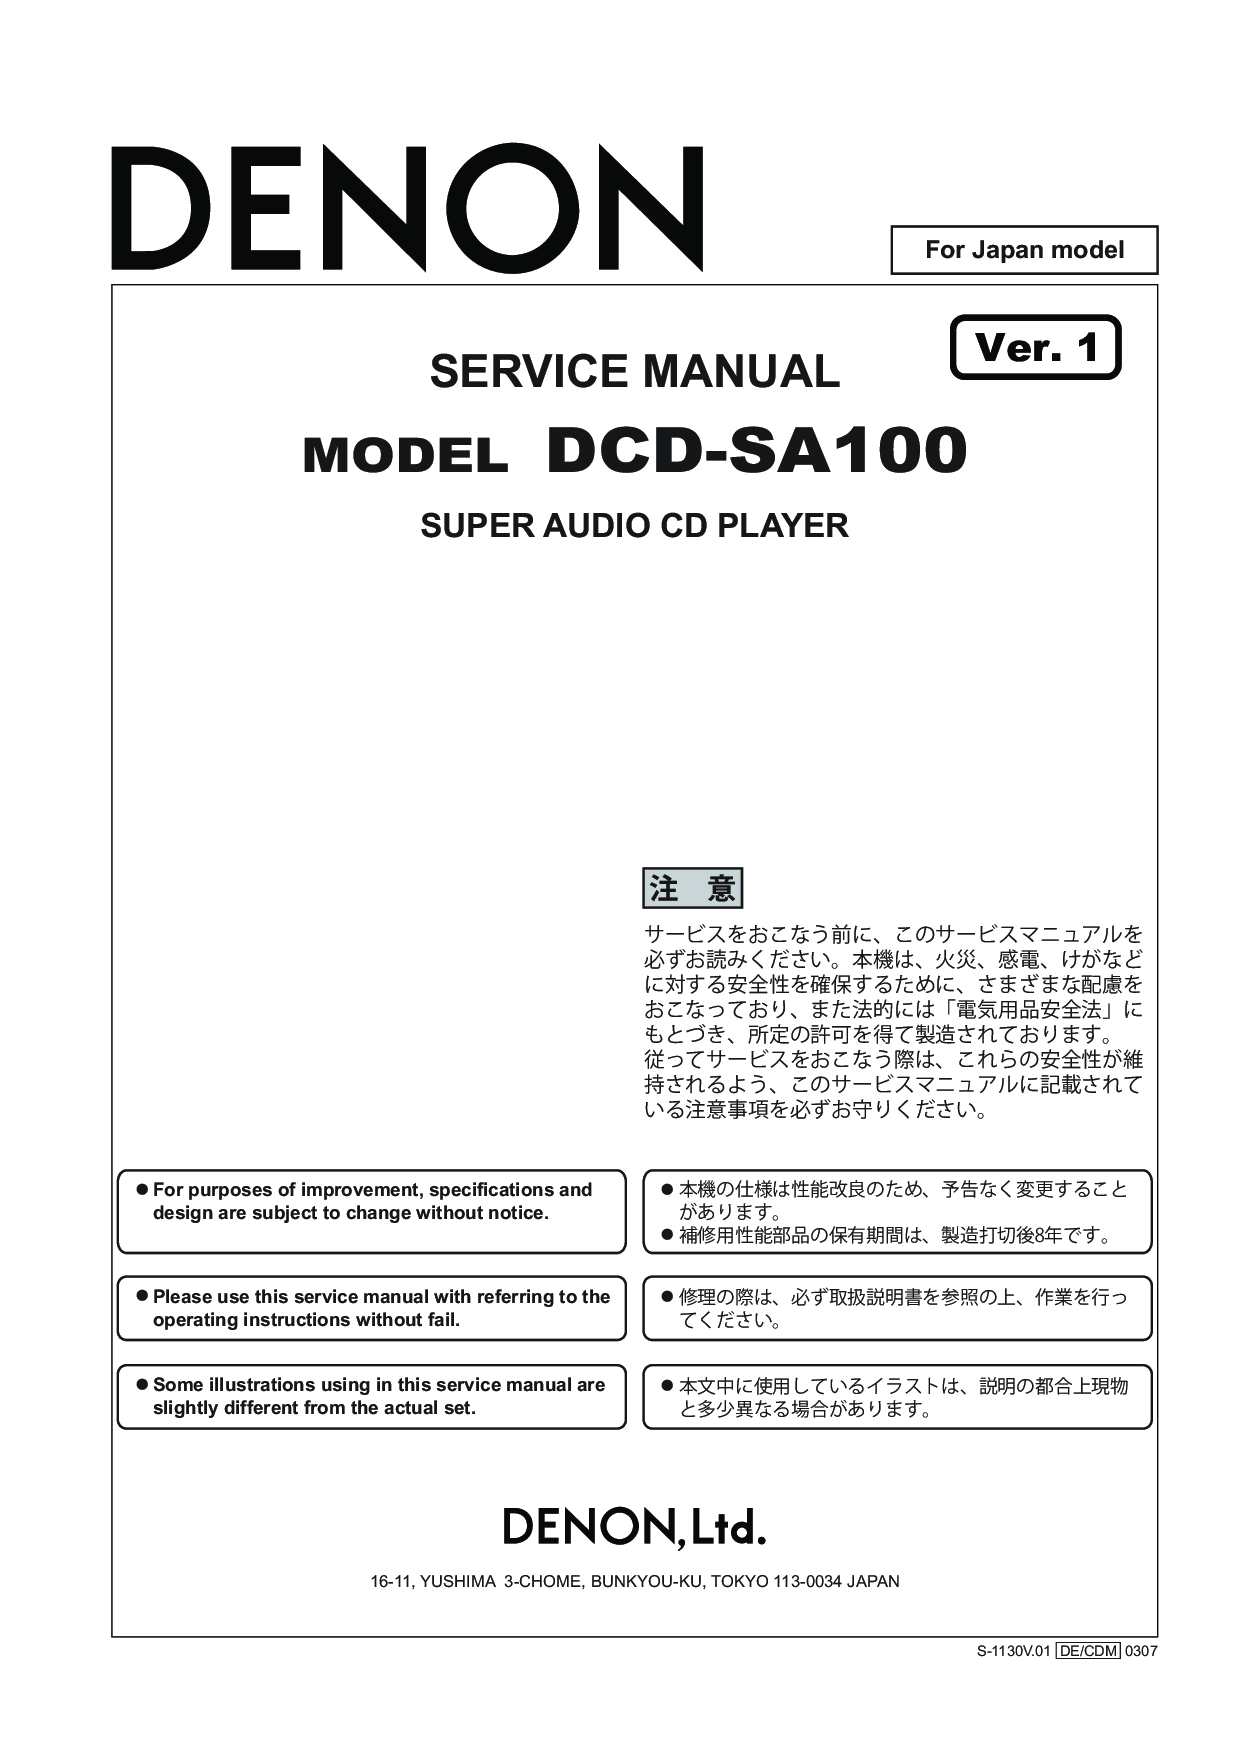 Denon DCD-SA100 Service Manual